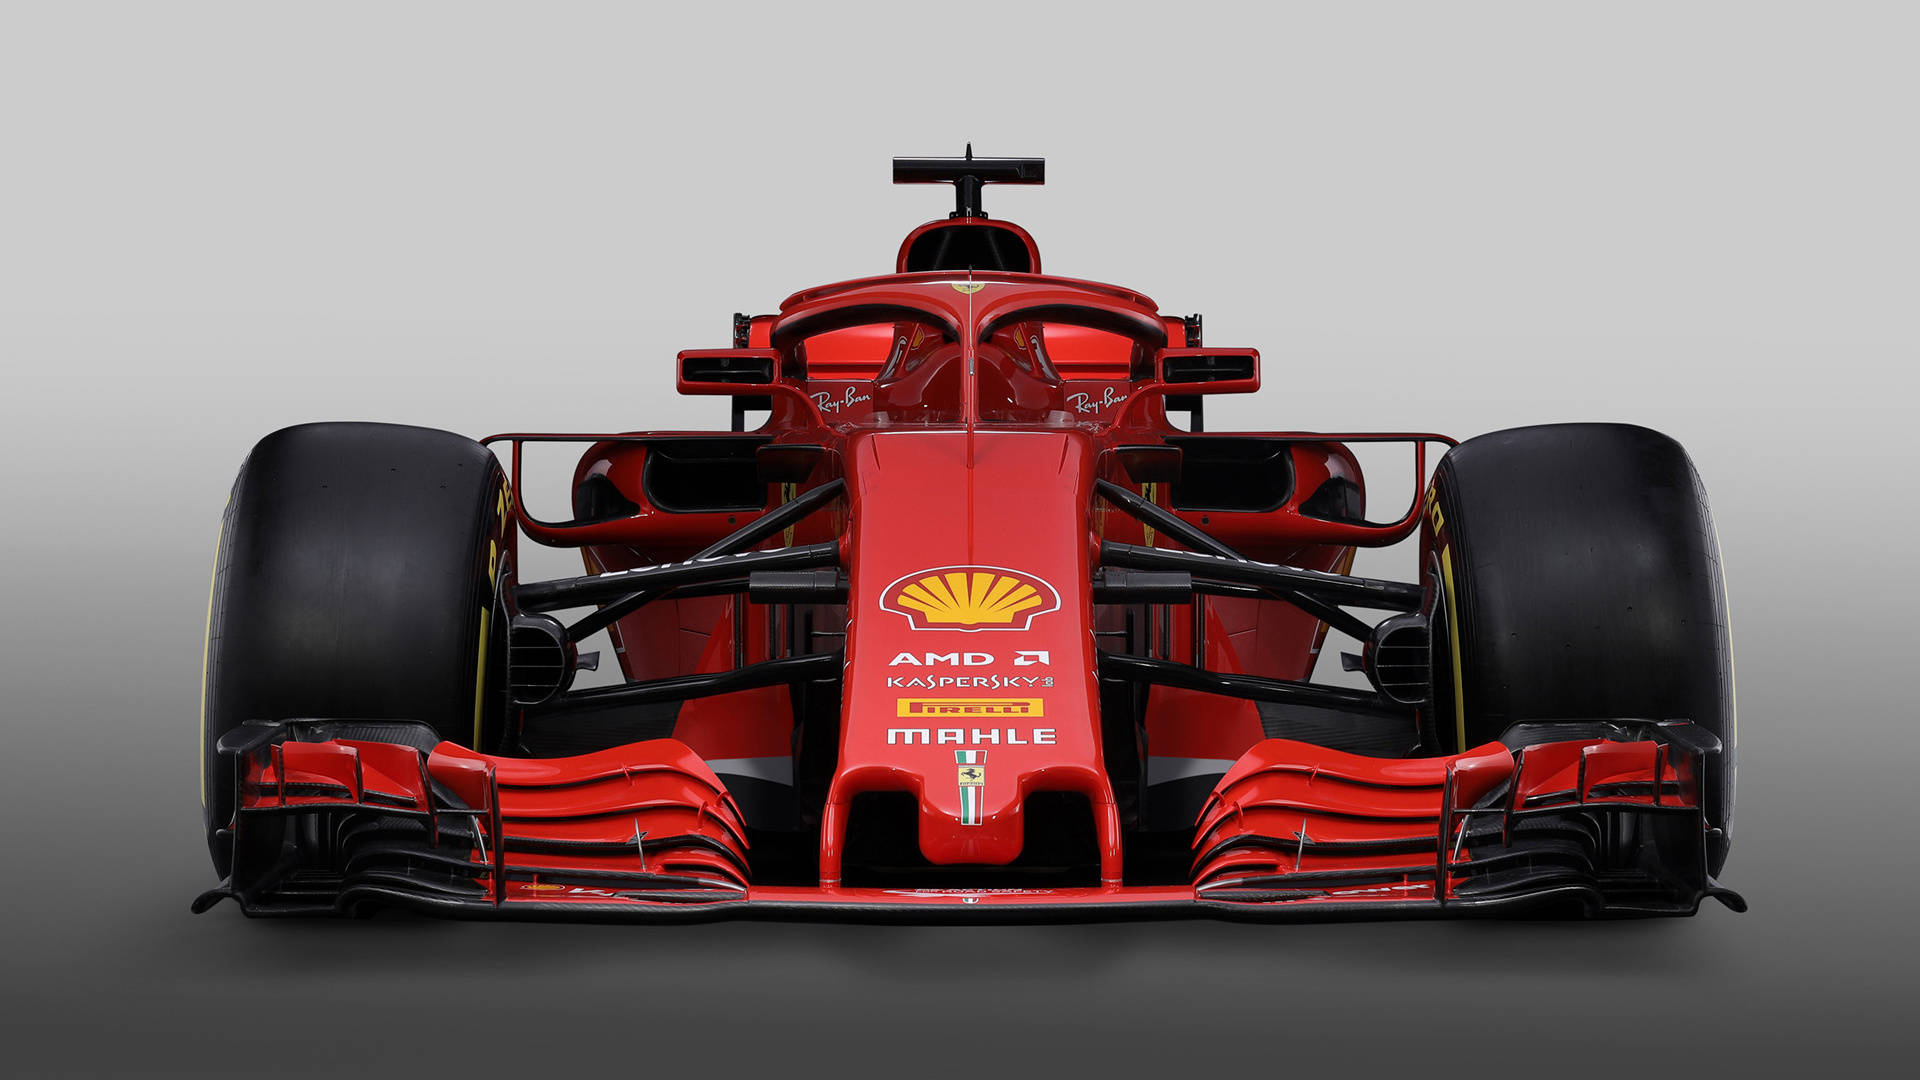 Ferrari F1 2018 Closer Front View Wallpaper